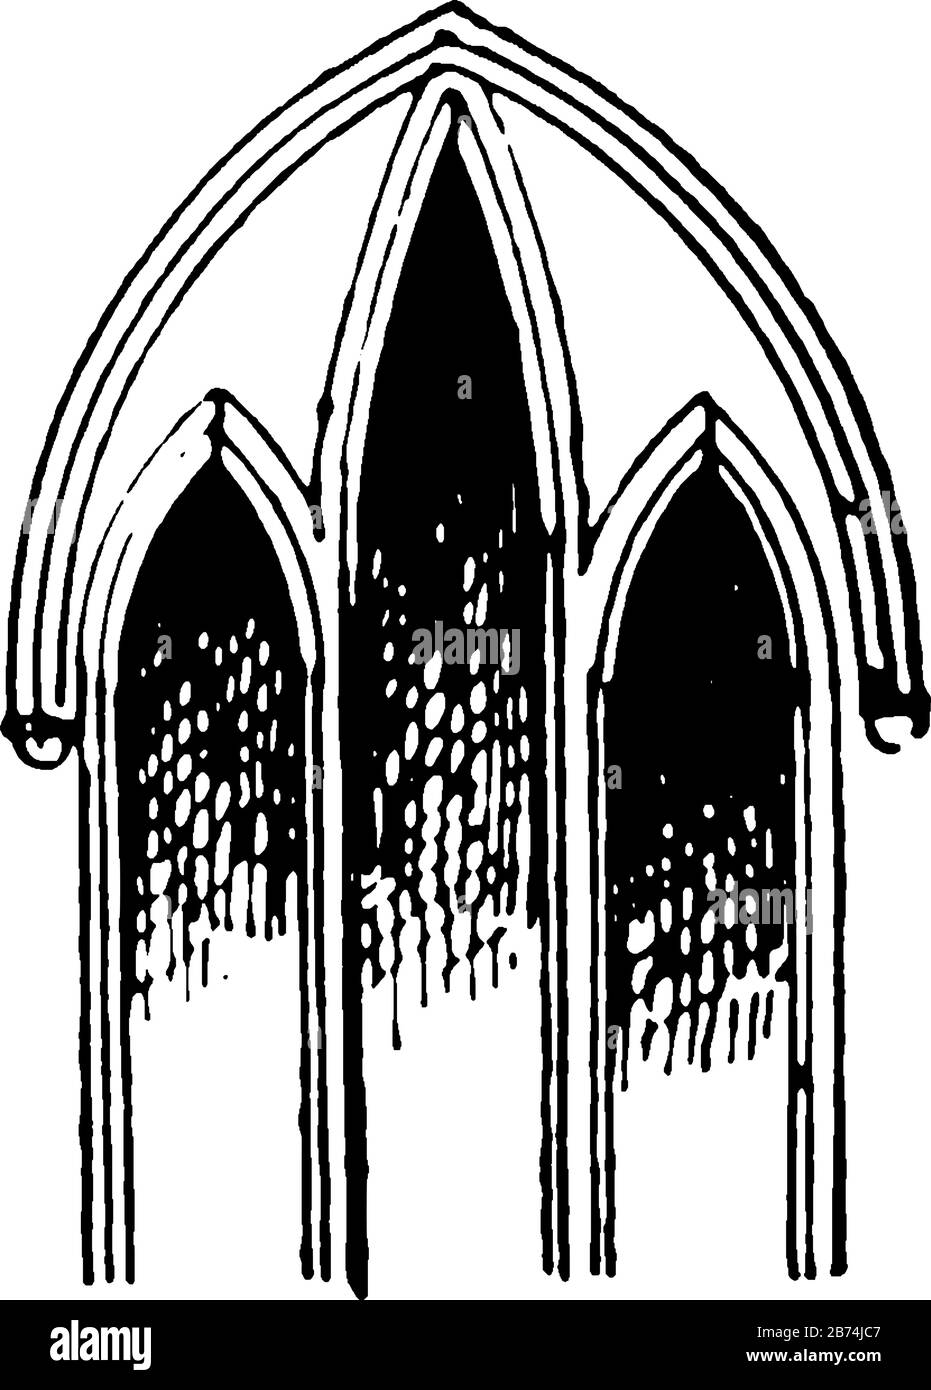 Lancet finestra o Wancet finestre, finestra stretta, Warmington Chiesa, linea d'epoca disegno o incisione illustrazione. Illustrazione Vettoriale